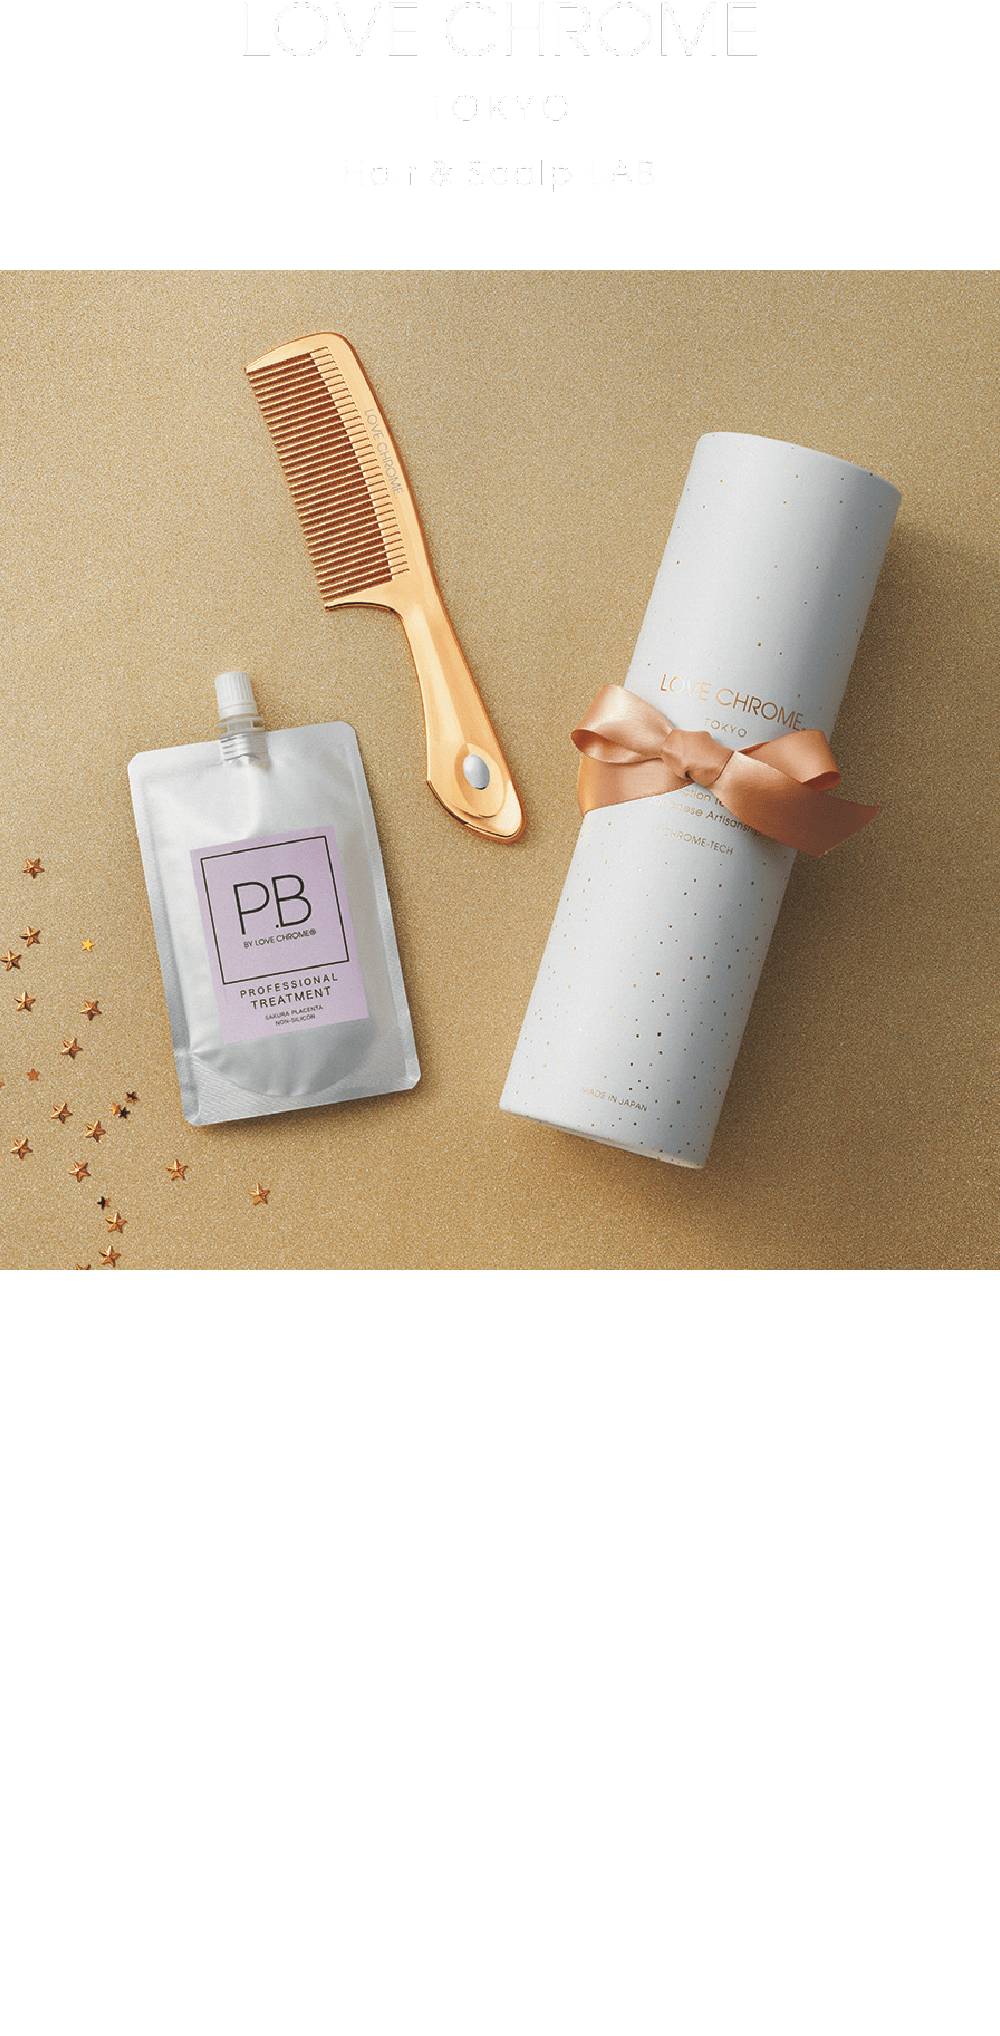 LOVE CHROME TOKYO  Hair&Scalp LAB / 5F ラブクロム スペシャルBOX（K24GPテツキ ゴールド（SB）＋トリートメント100g）13,530円 限定デザインコームとトリートメントメントが付いた、期間限定のスペシャルBOXです。ご自身用にも、ギフトにもおすすめです！